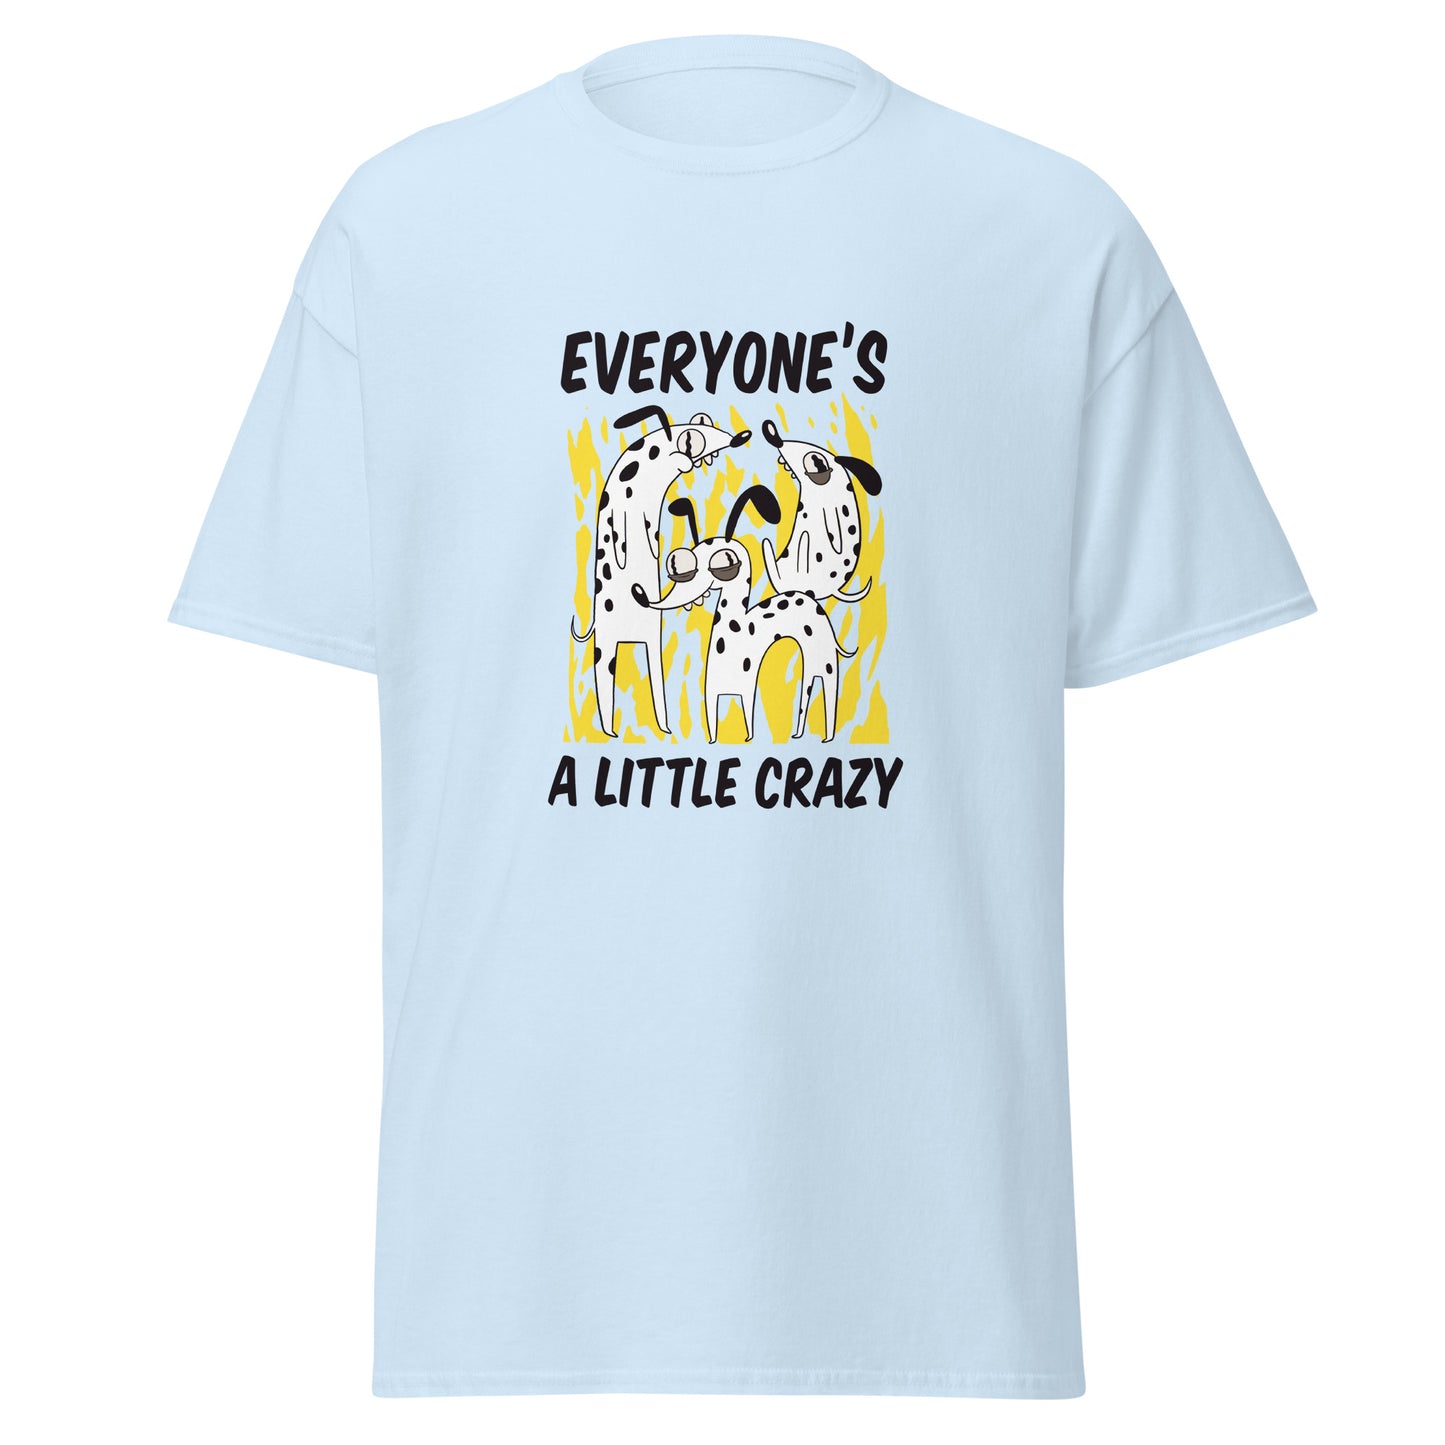 Everyone's a little crazy T-Shirt